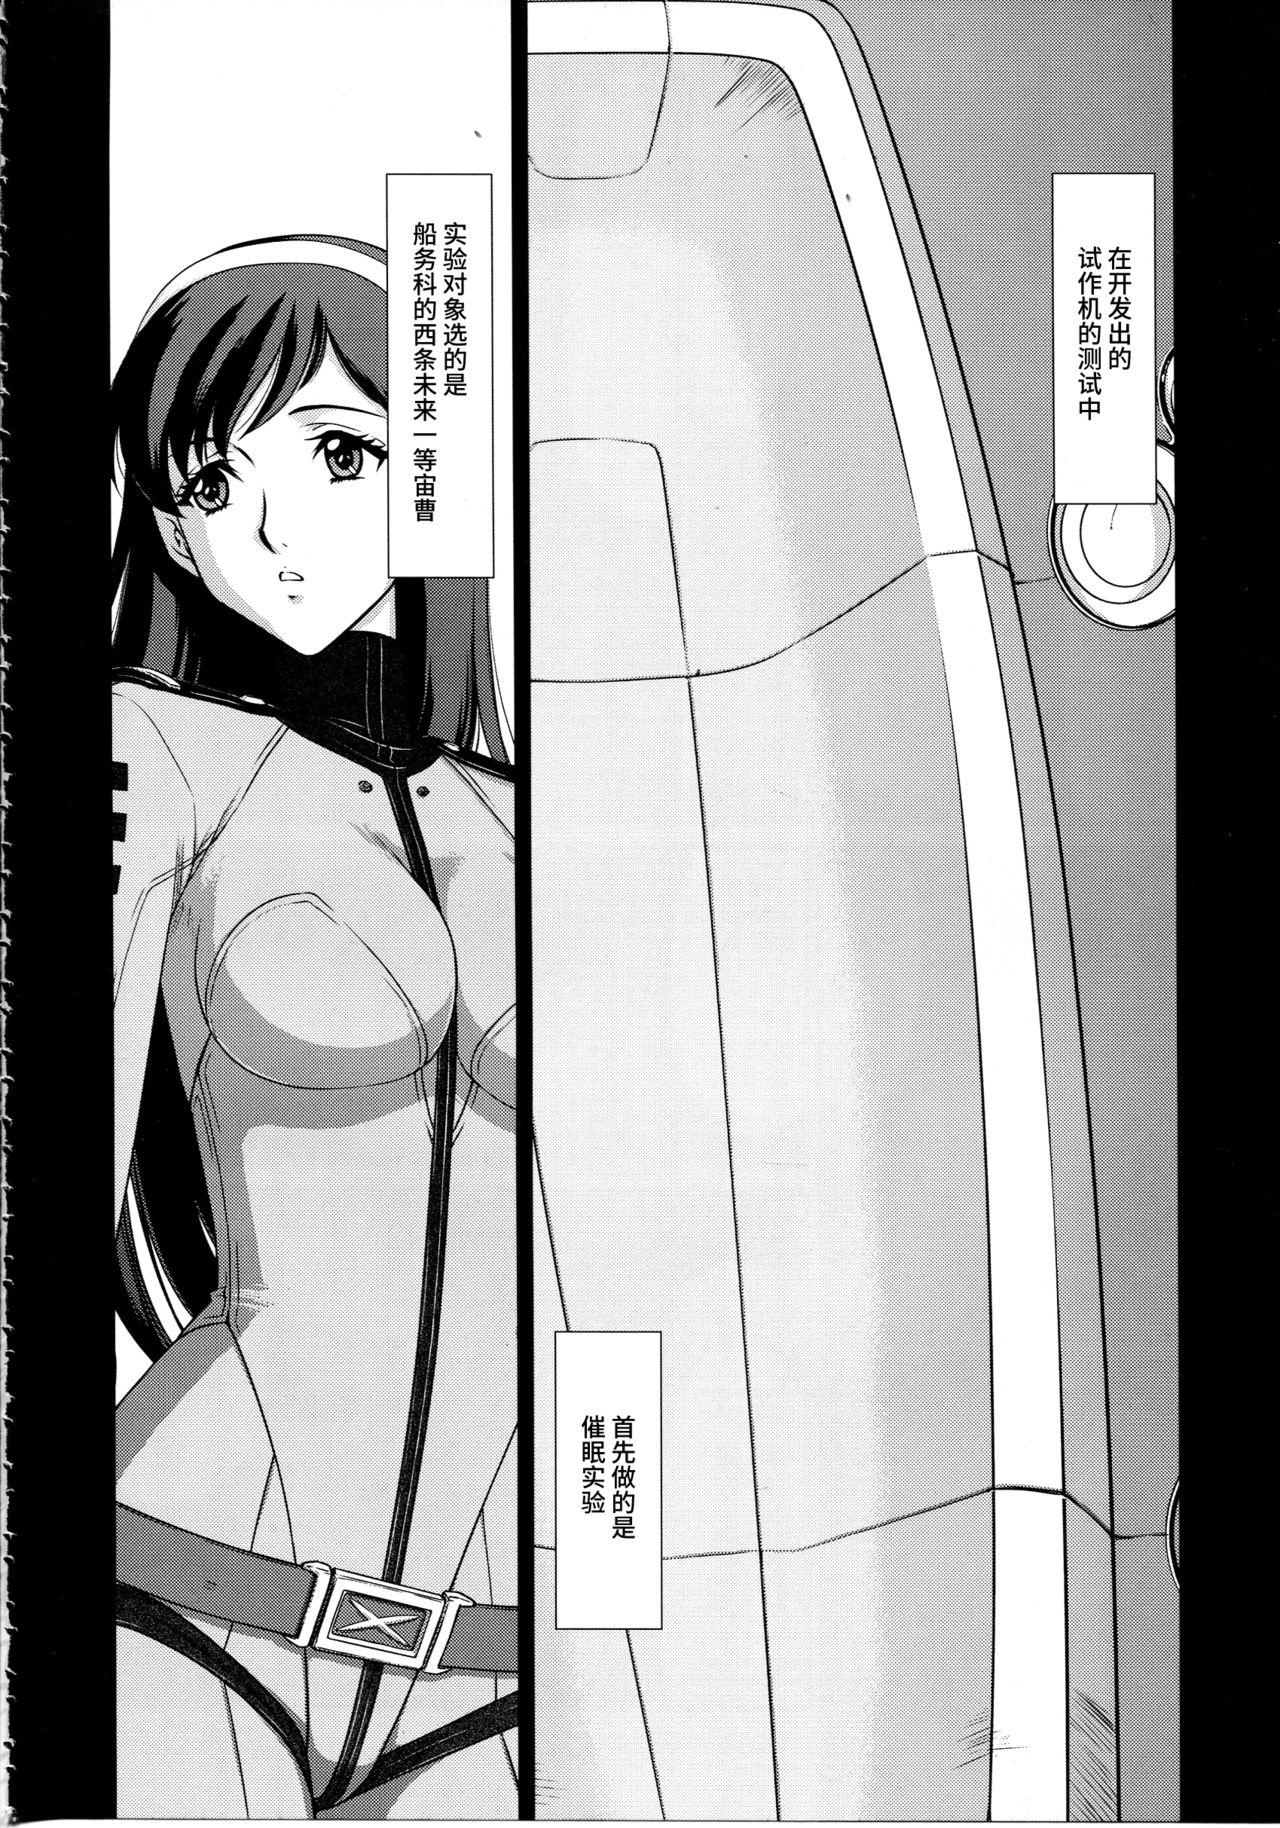 Cumswallow Yuki no Shizuku - Space battleship yamato 2199 Mojada - Page 5